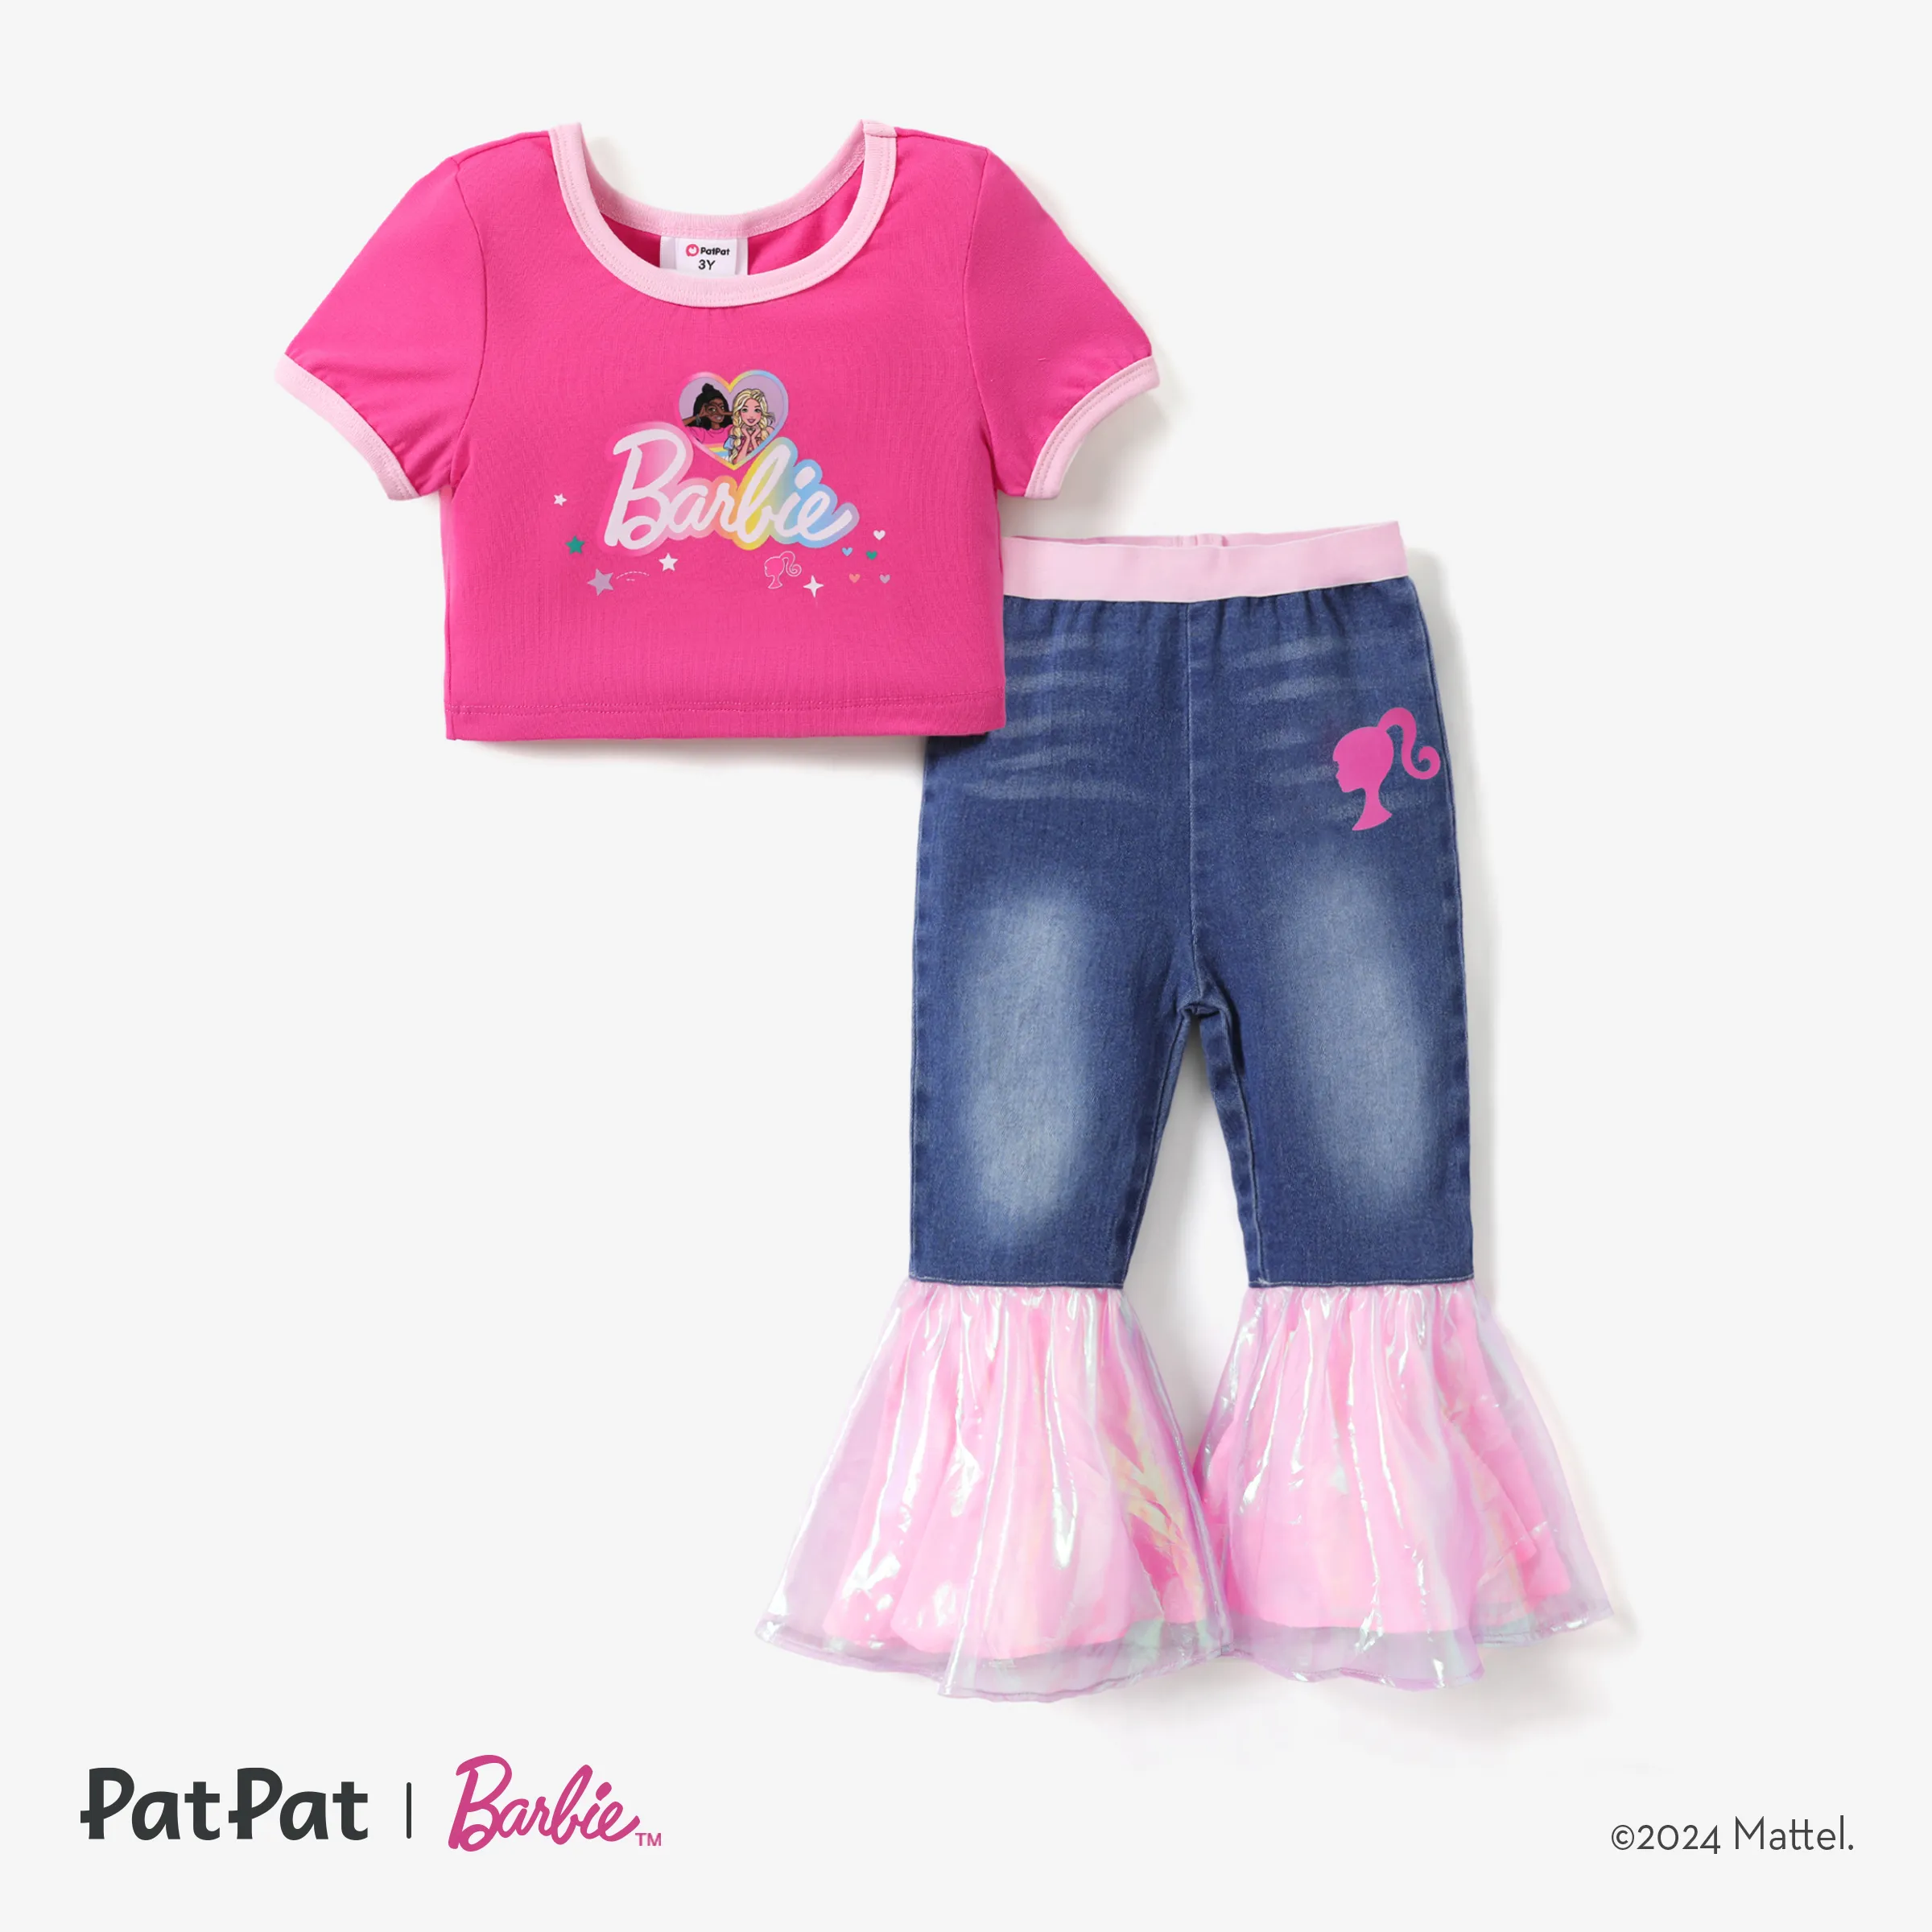 芭比嬰兒喇叭牛仔褲，柔軟牛仔布料，網眼拼接設計，甜美風格。